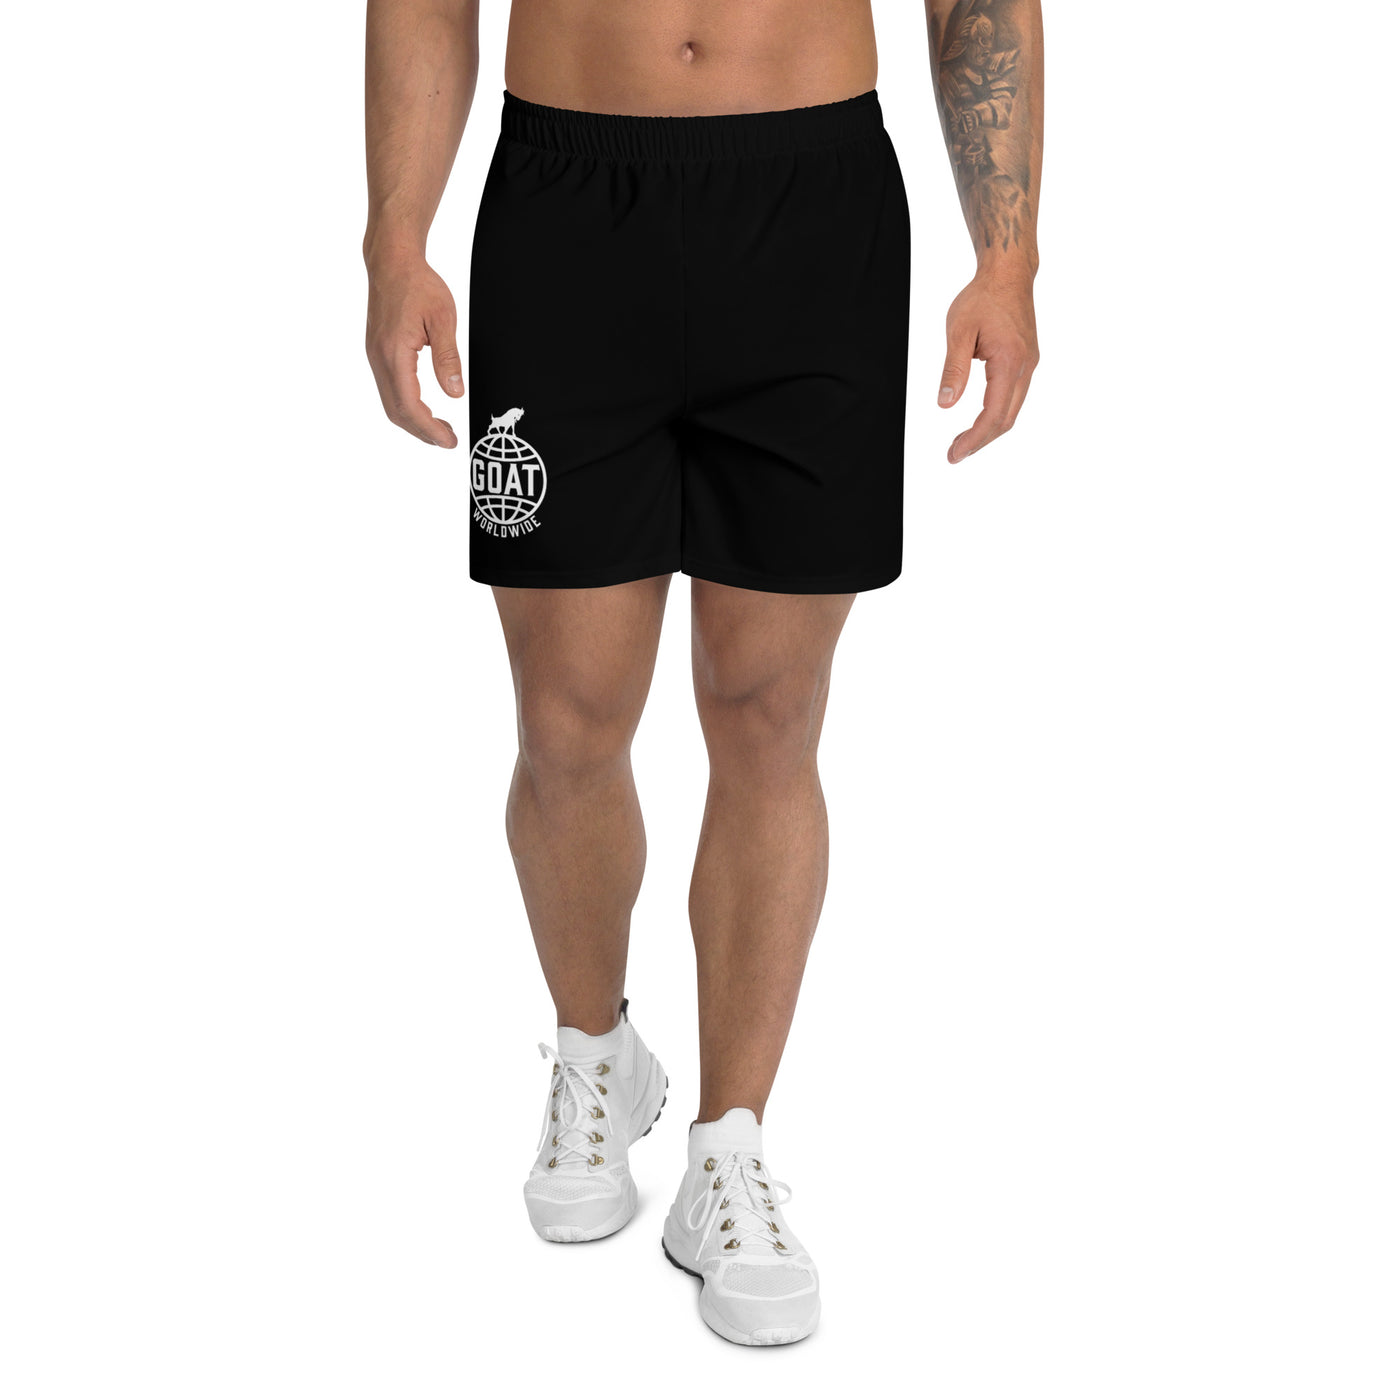 GOAT Worldwide Classic Training Shorts (Black)